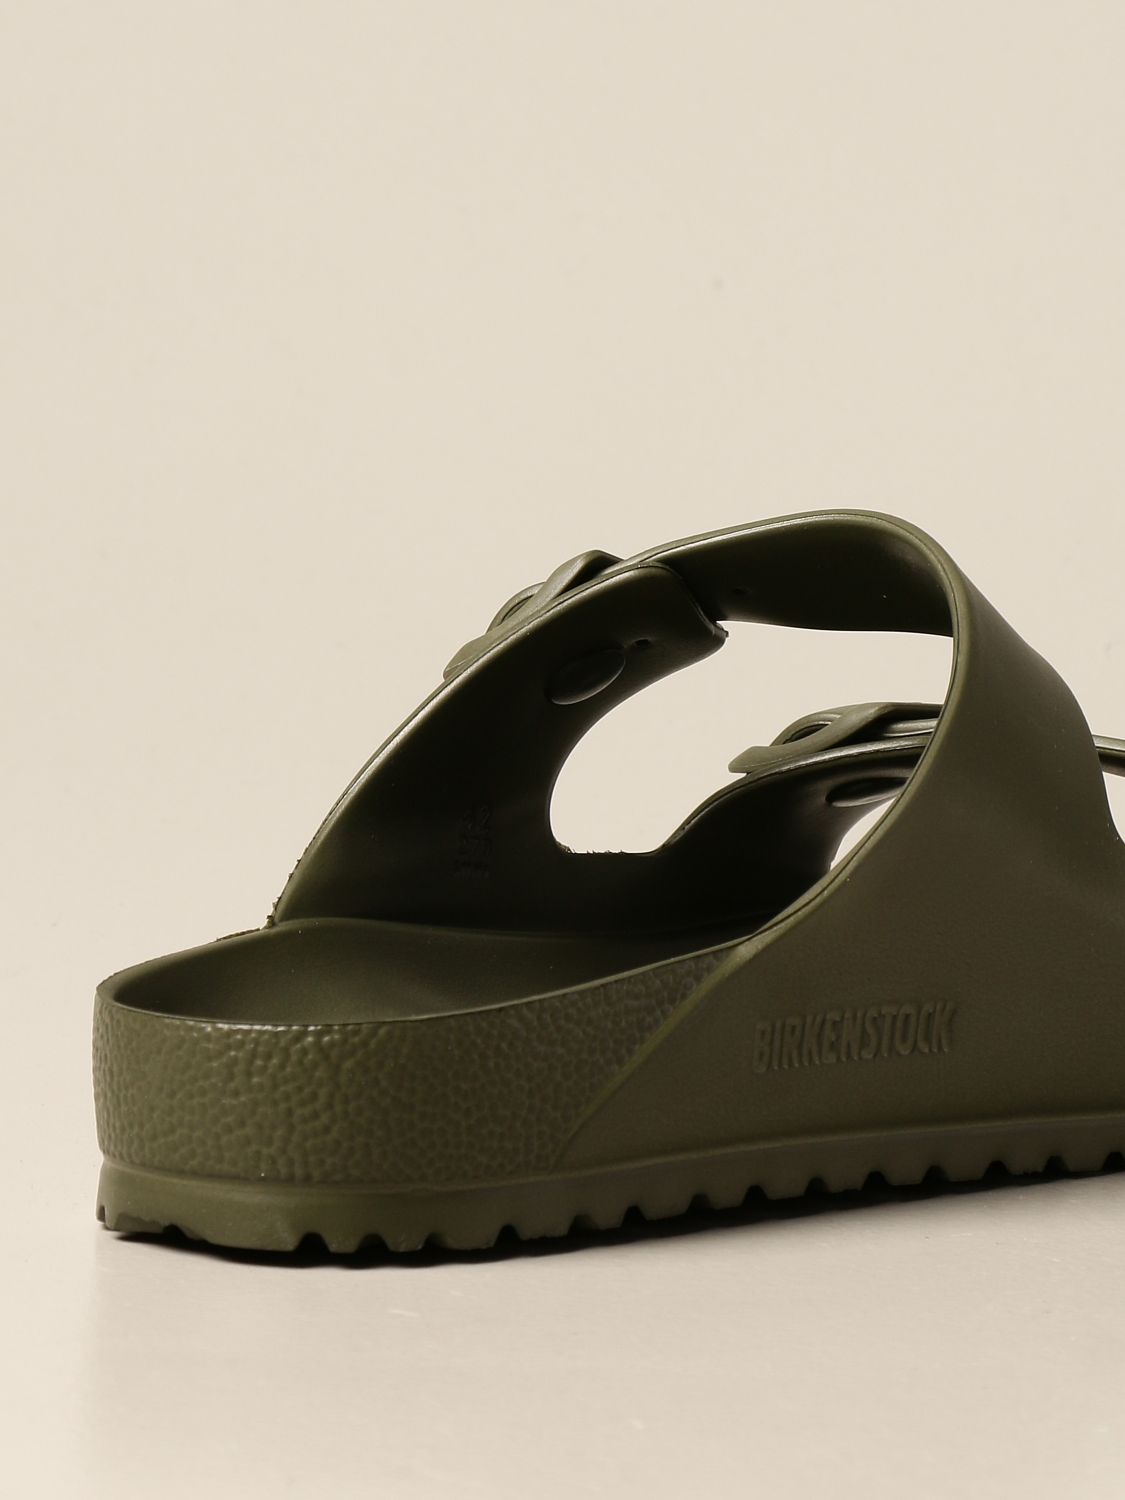 birkenstock rubber sandals